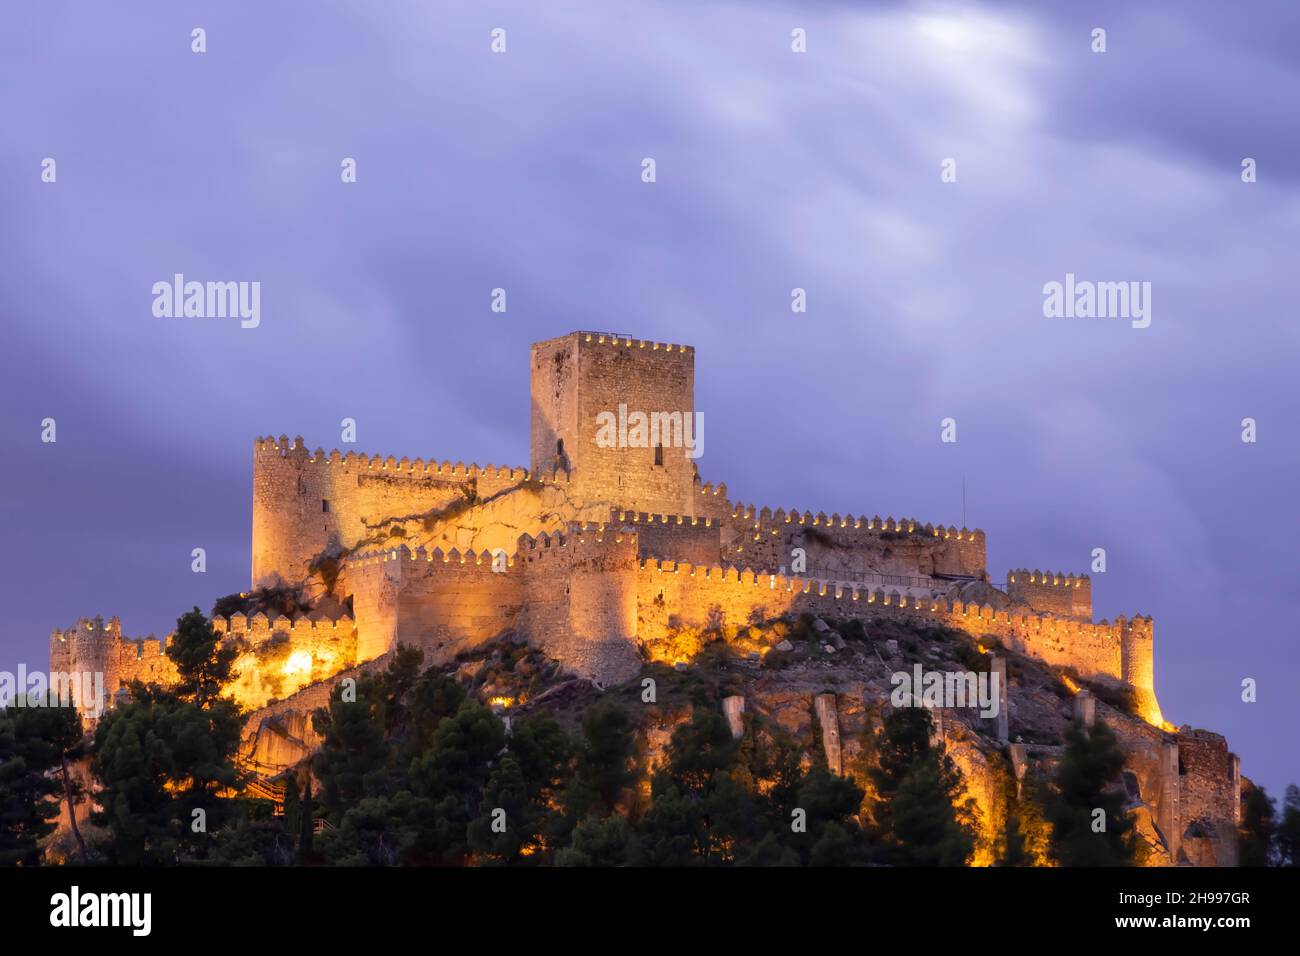 The Castle of Almansa (Spanish: Castillo de Almansa) is a castle located in Almansa, Spain. Stock Photo